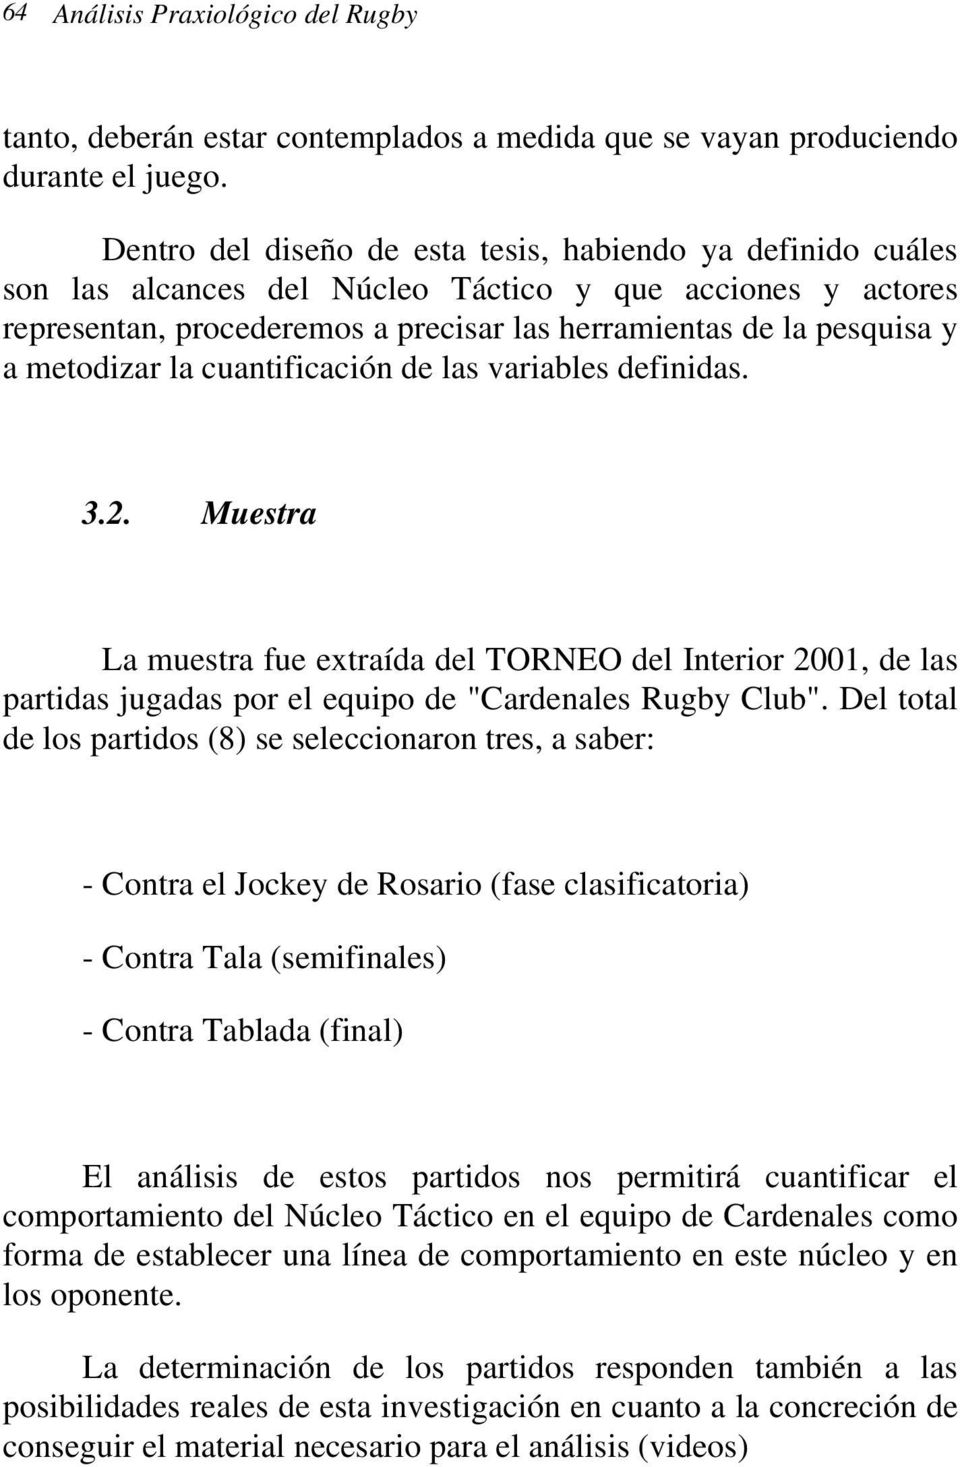 metodizar la cuantificación de las variables definidas. 3.2. Muestra La muestra fue extraída del TORNEO del Interior 2001, de las partidas jugadas por el equipo de "Cardenales Rugby Club".